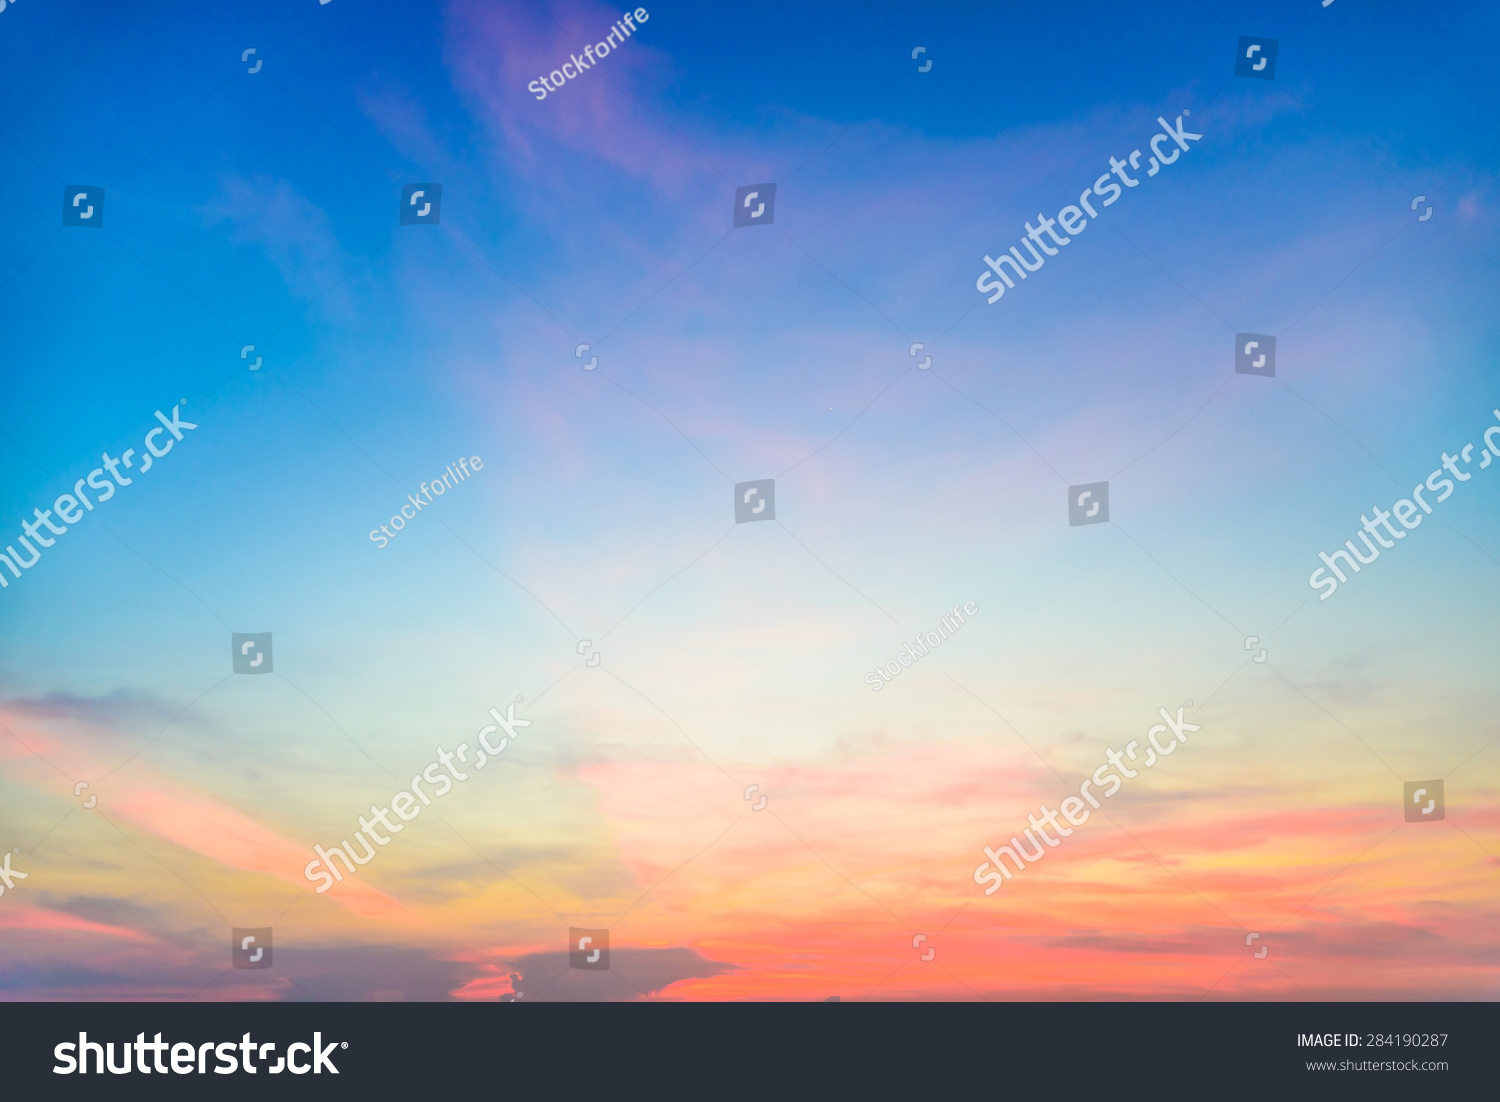 Twilight cloud on sky - filter effect #284190287